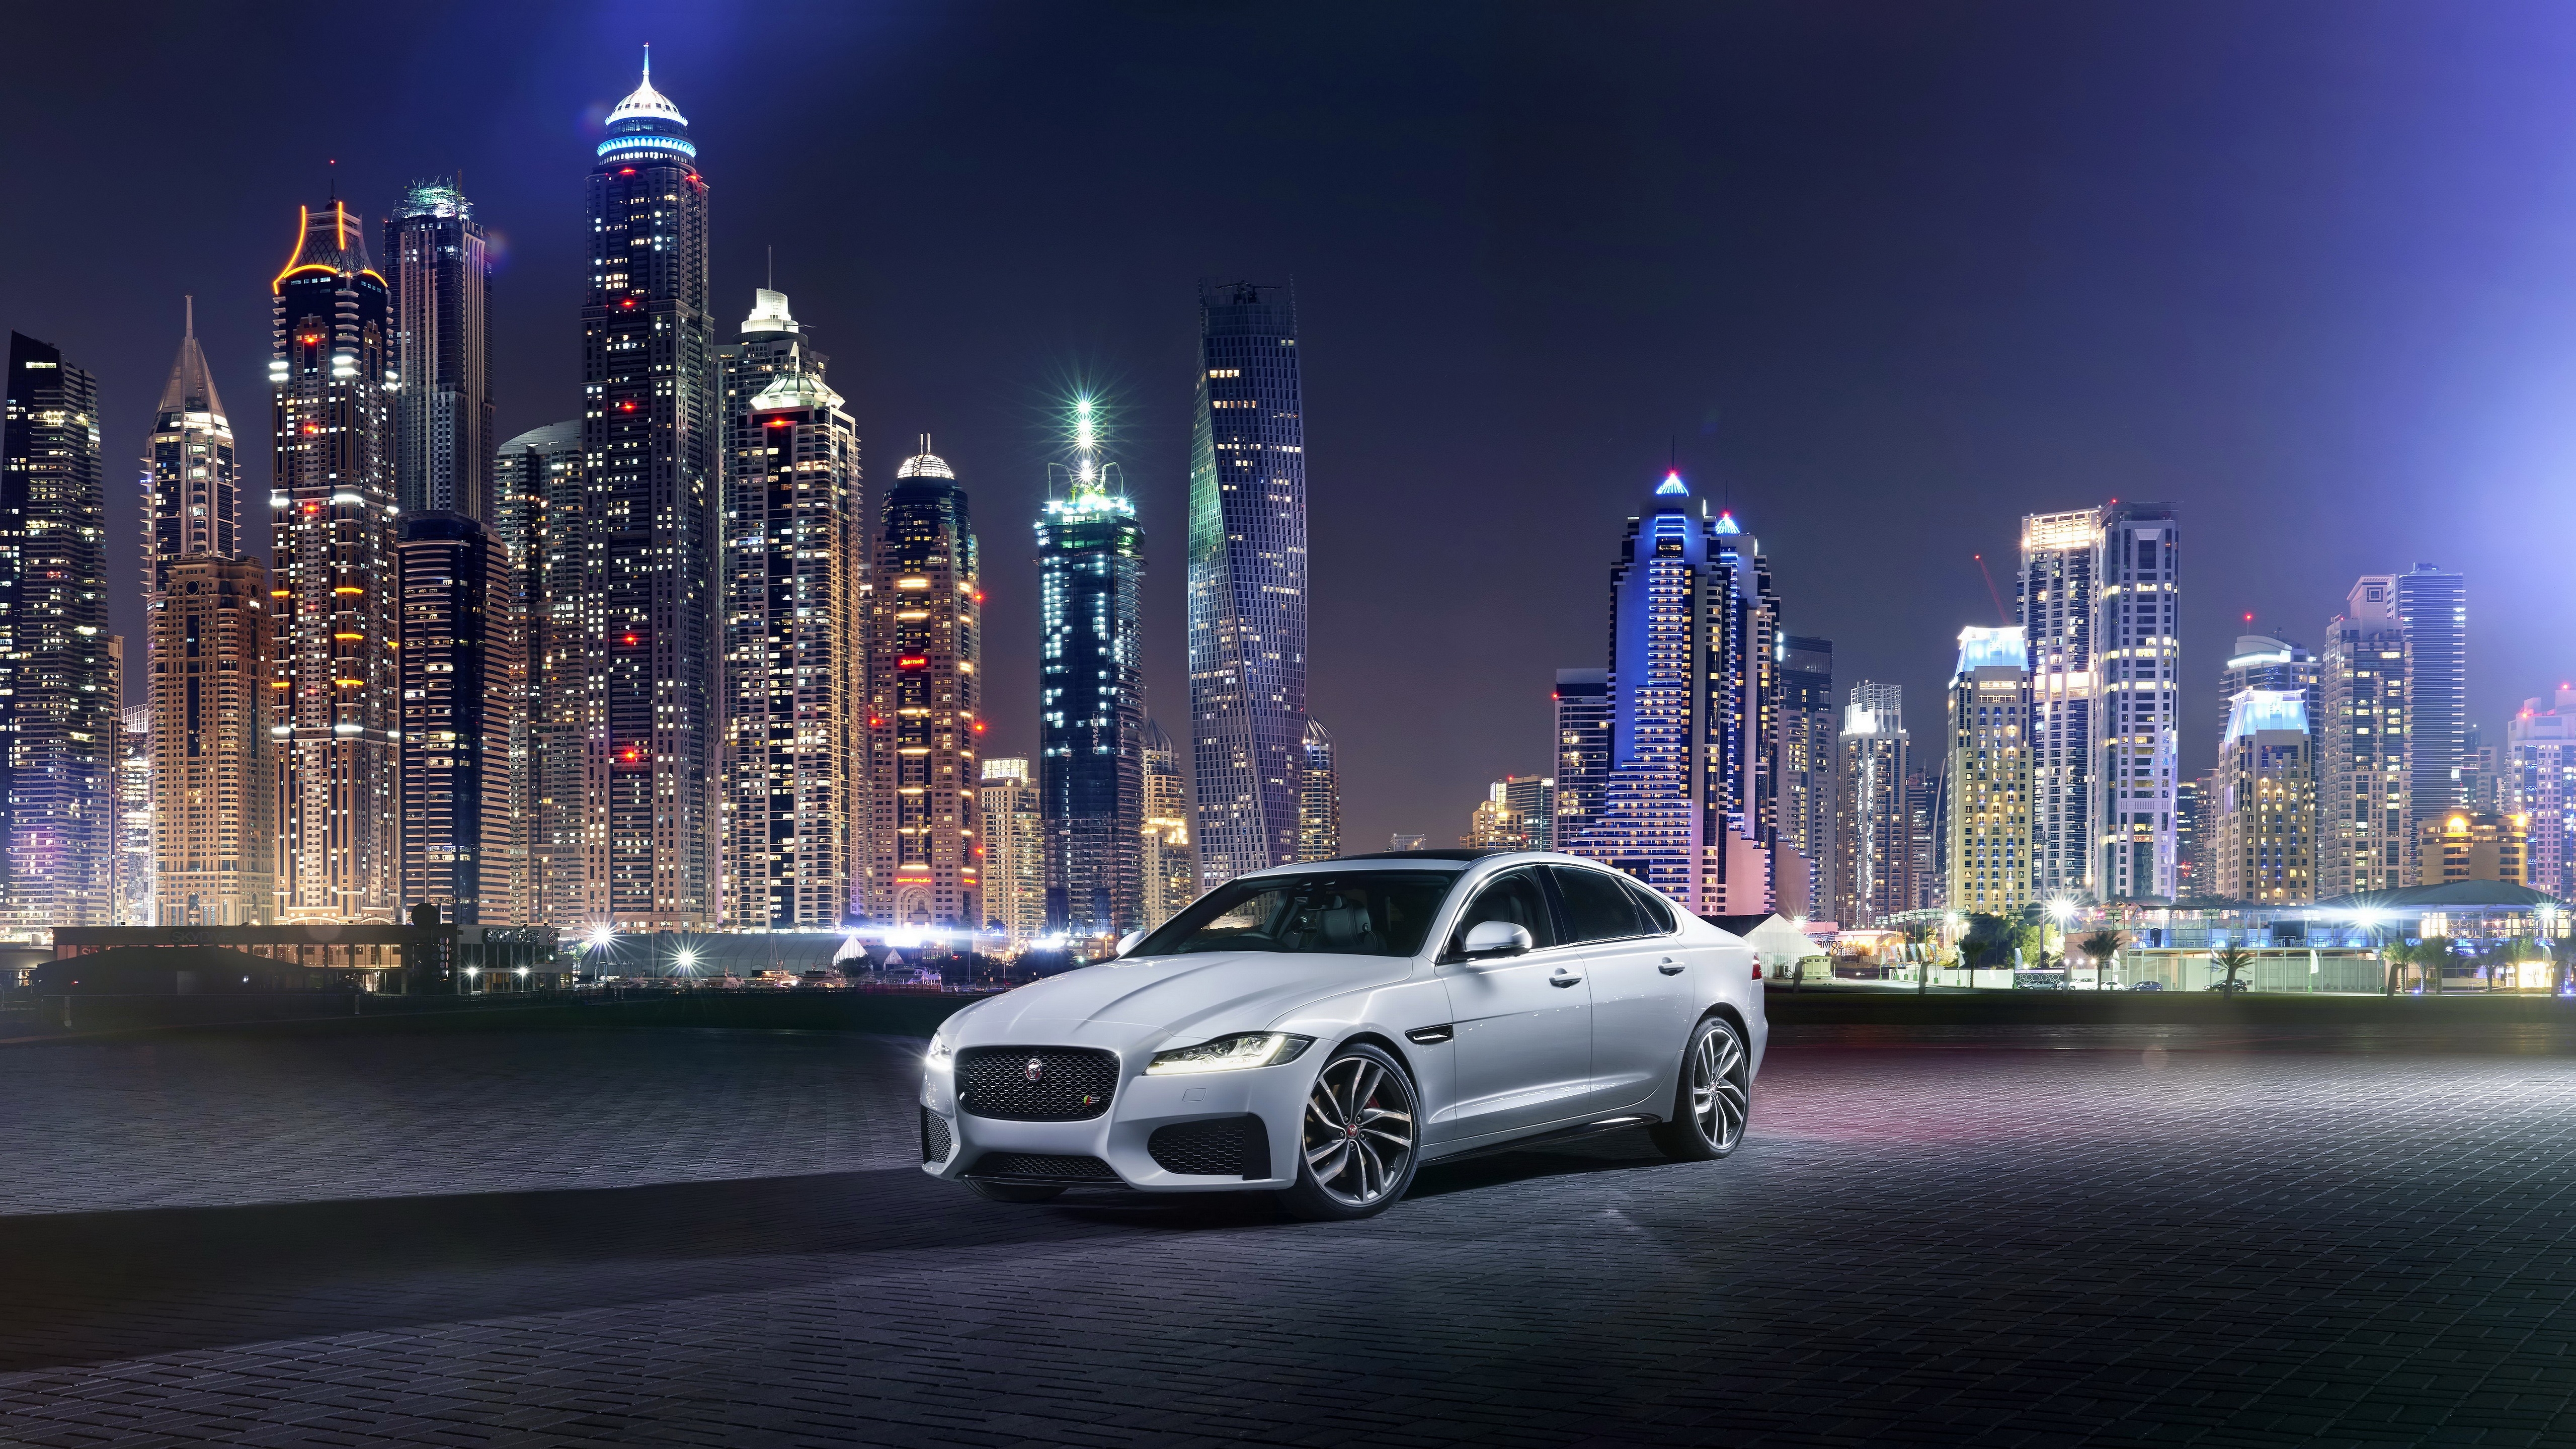 Jaguar XF 2015 for 5120 x 2880 5K Ultra HD resolution